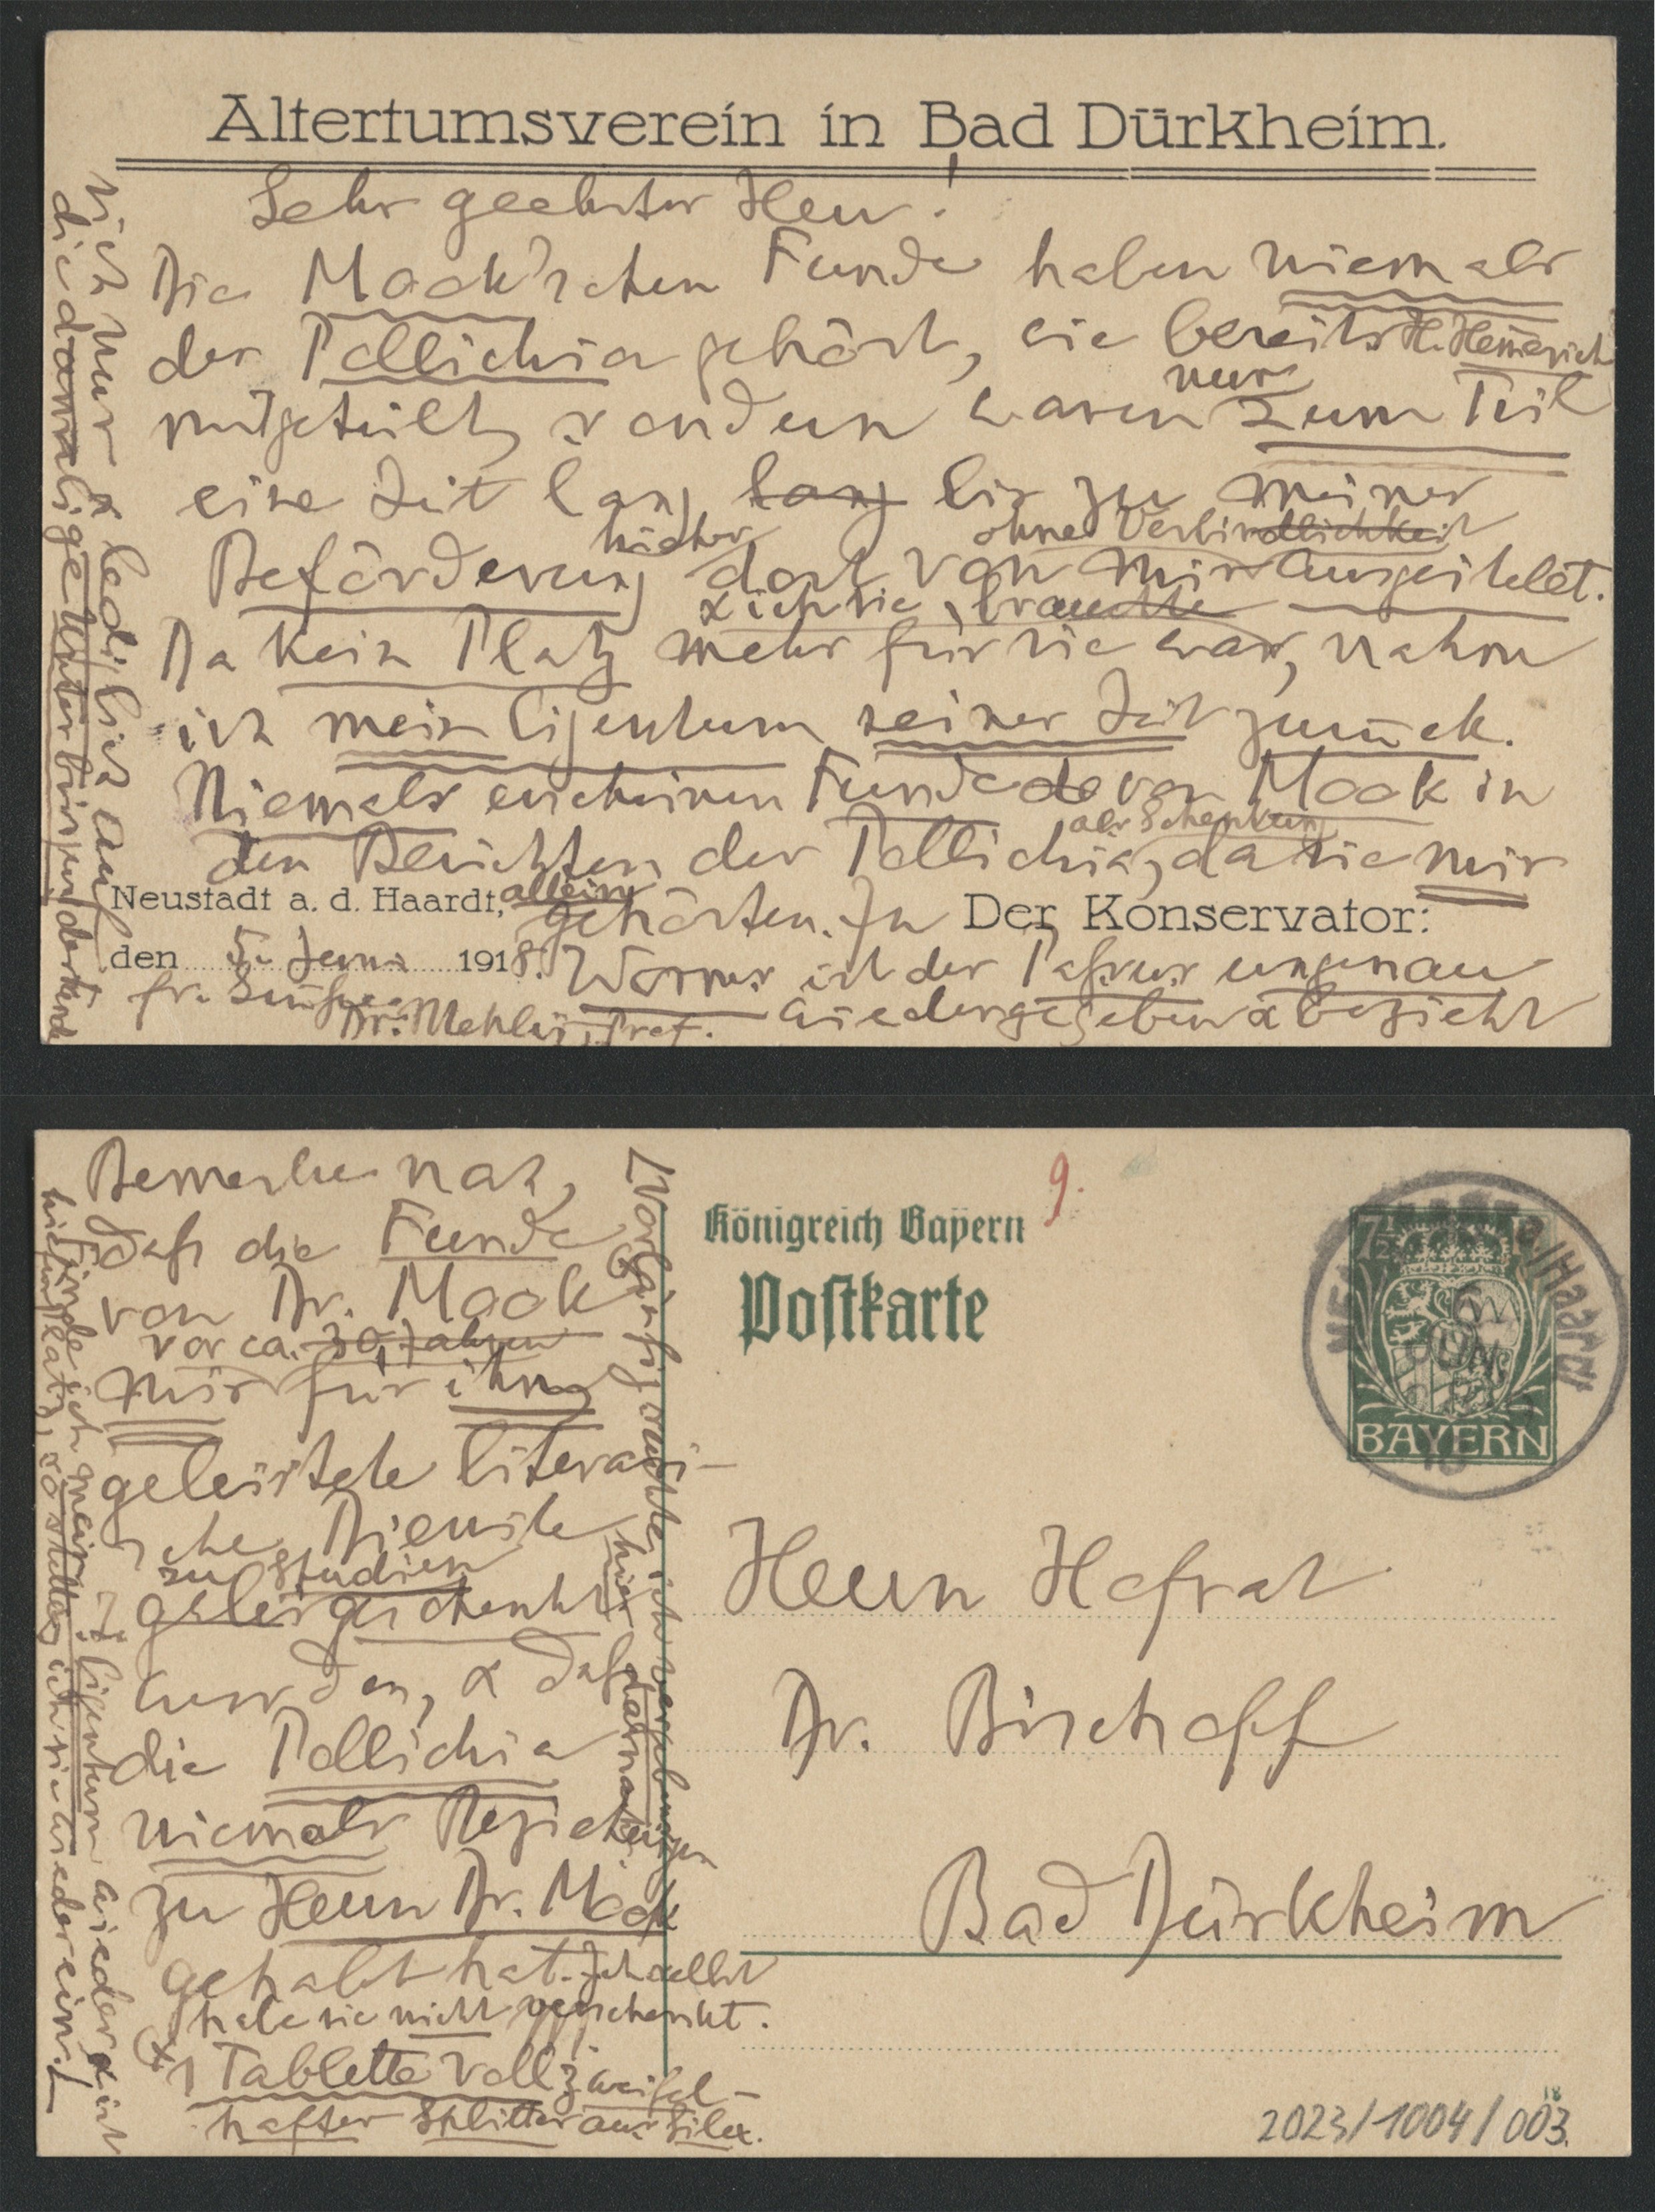 Postkarte von C. Mehlis an Dr. Bischoff (2 Seiten) (Stadtmuseum Bad Dürkheim im Kulturzentrum Haus Catoir CC BY-NC-SA)